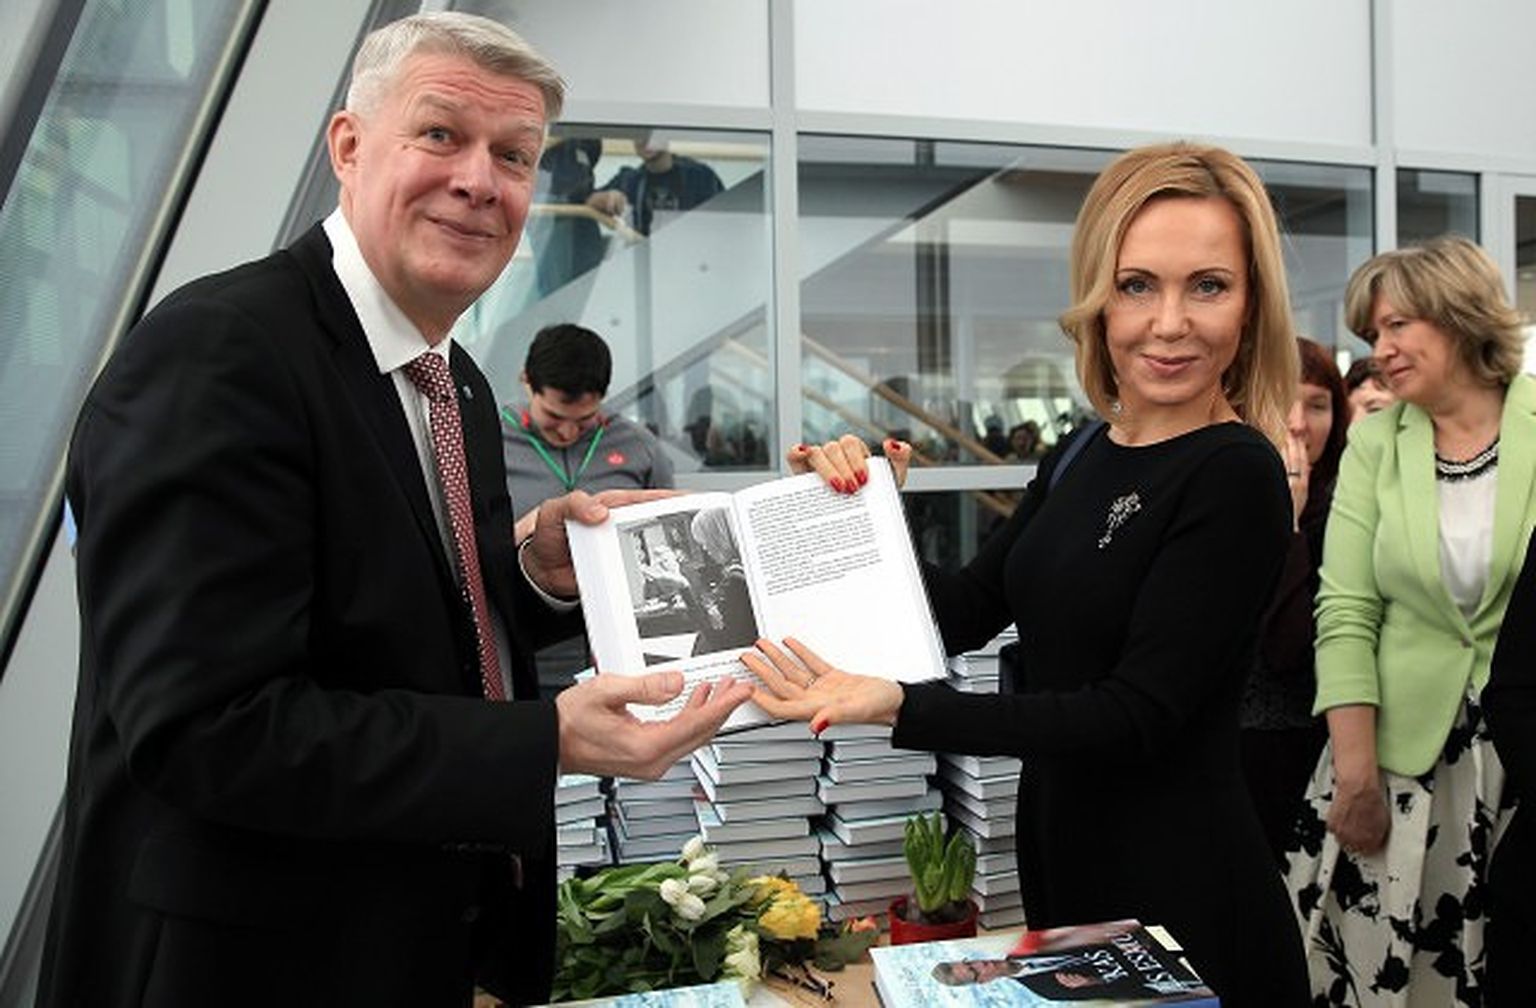 Eksprezidents Valdis Zatlers un politiķe Sandra Sondore Kukule grāmatas "Kas es esmu" atvēršanas svētkos Latvijas Nacionālajā bibliotēkā